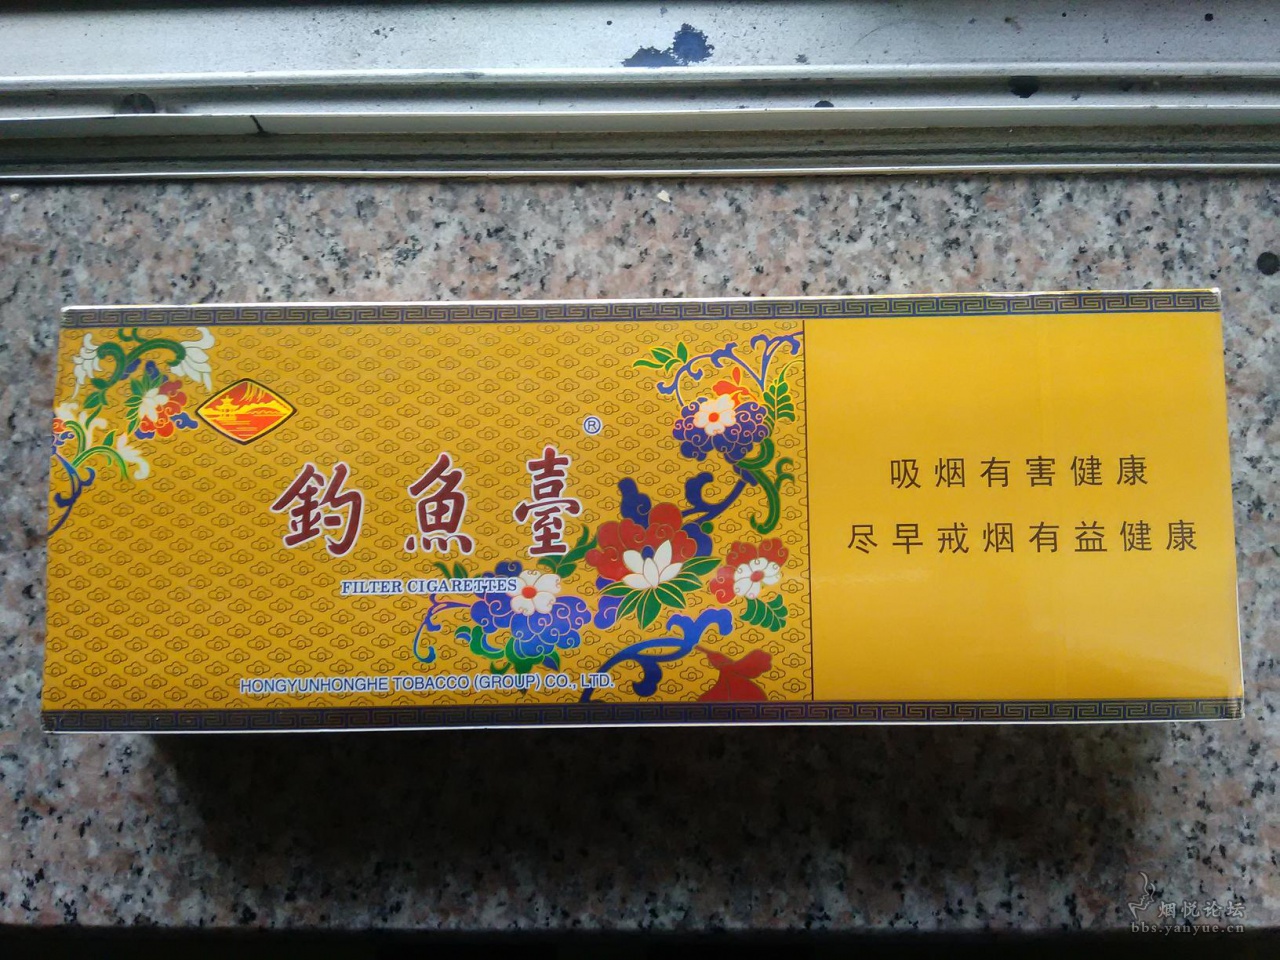 北京钓鱼台景泰蓝烟2千多了 - 香烟品鉴 - 烟悦网论坛